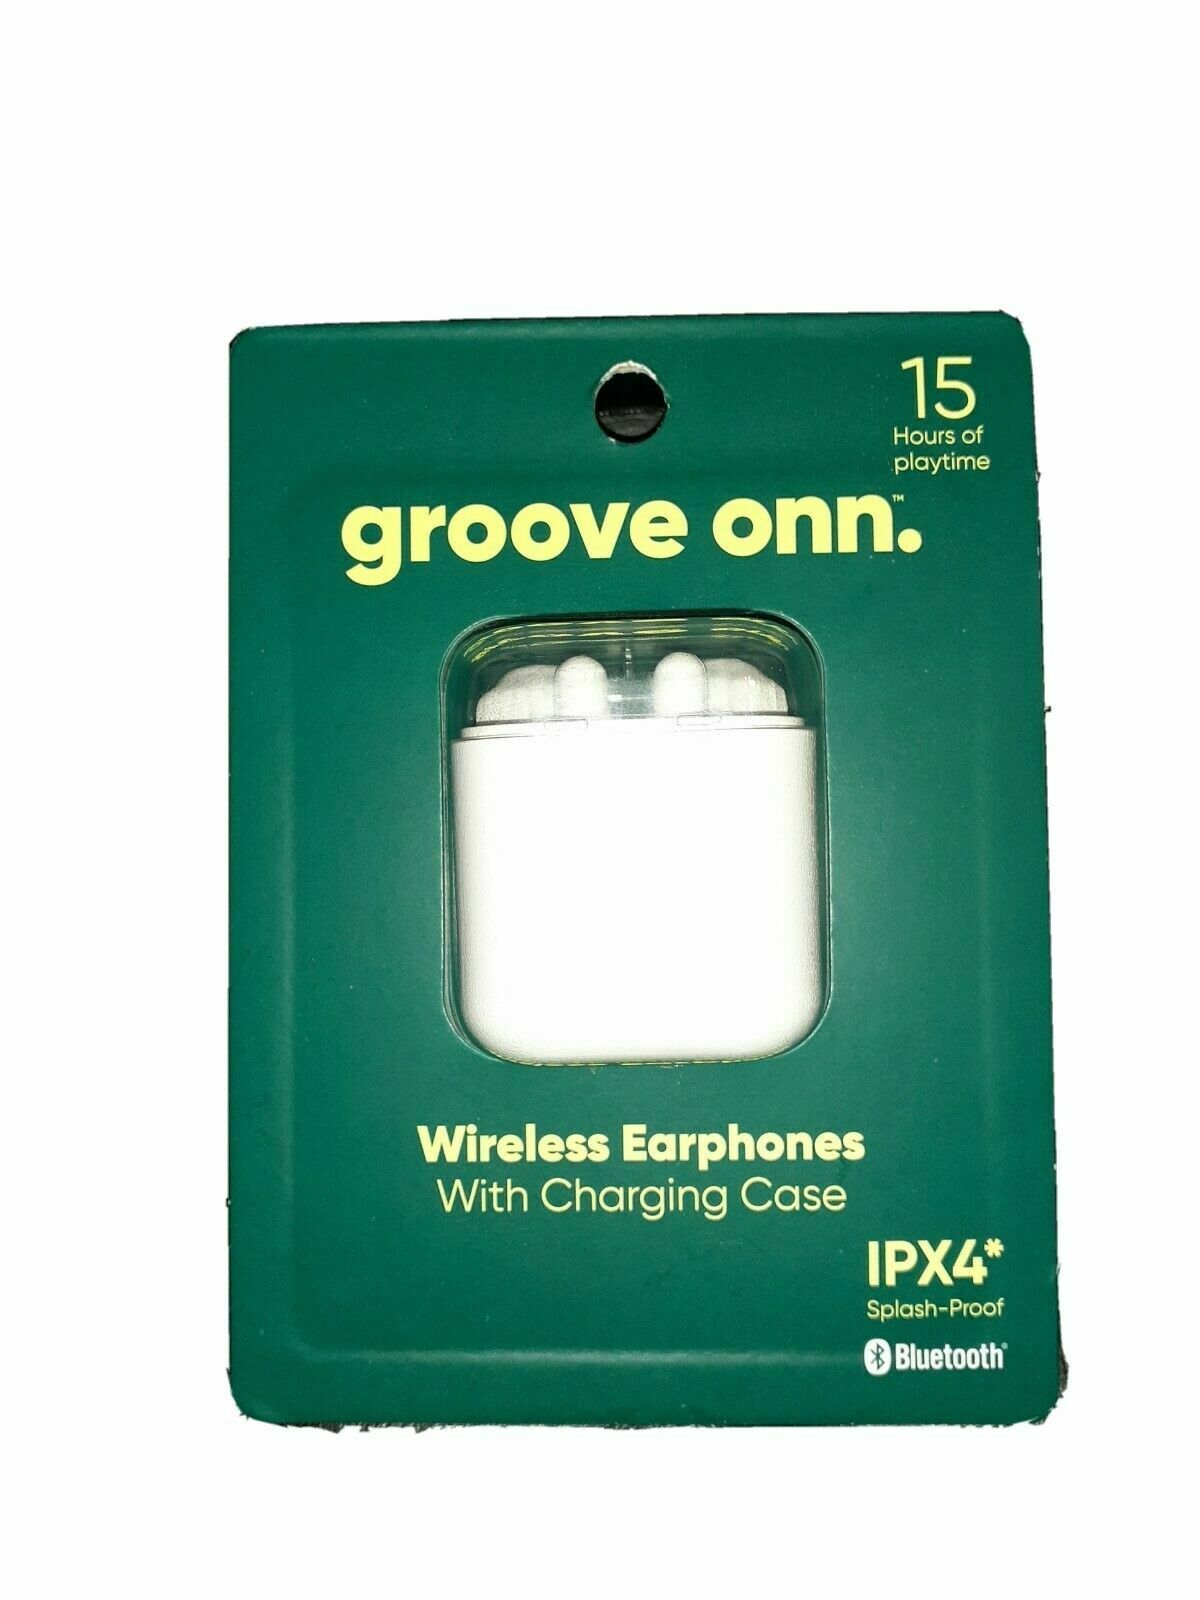 Groove Onn 100016495 Wireless Earphones w/ Charging Case IPX4 Splash-Proof GB